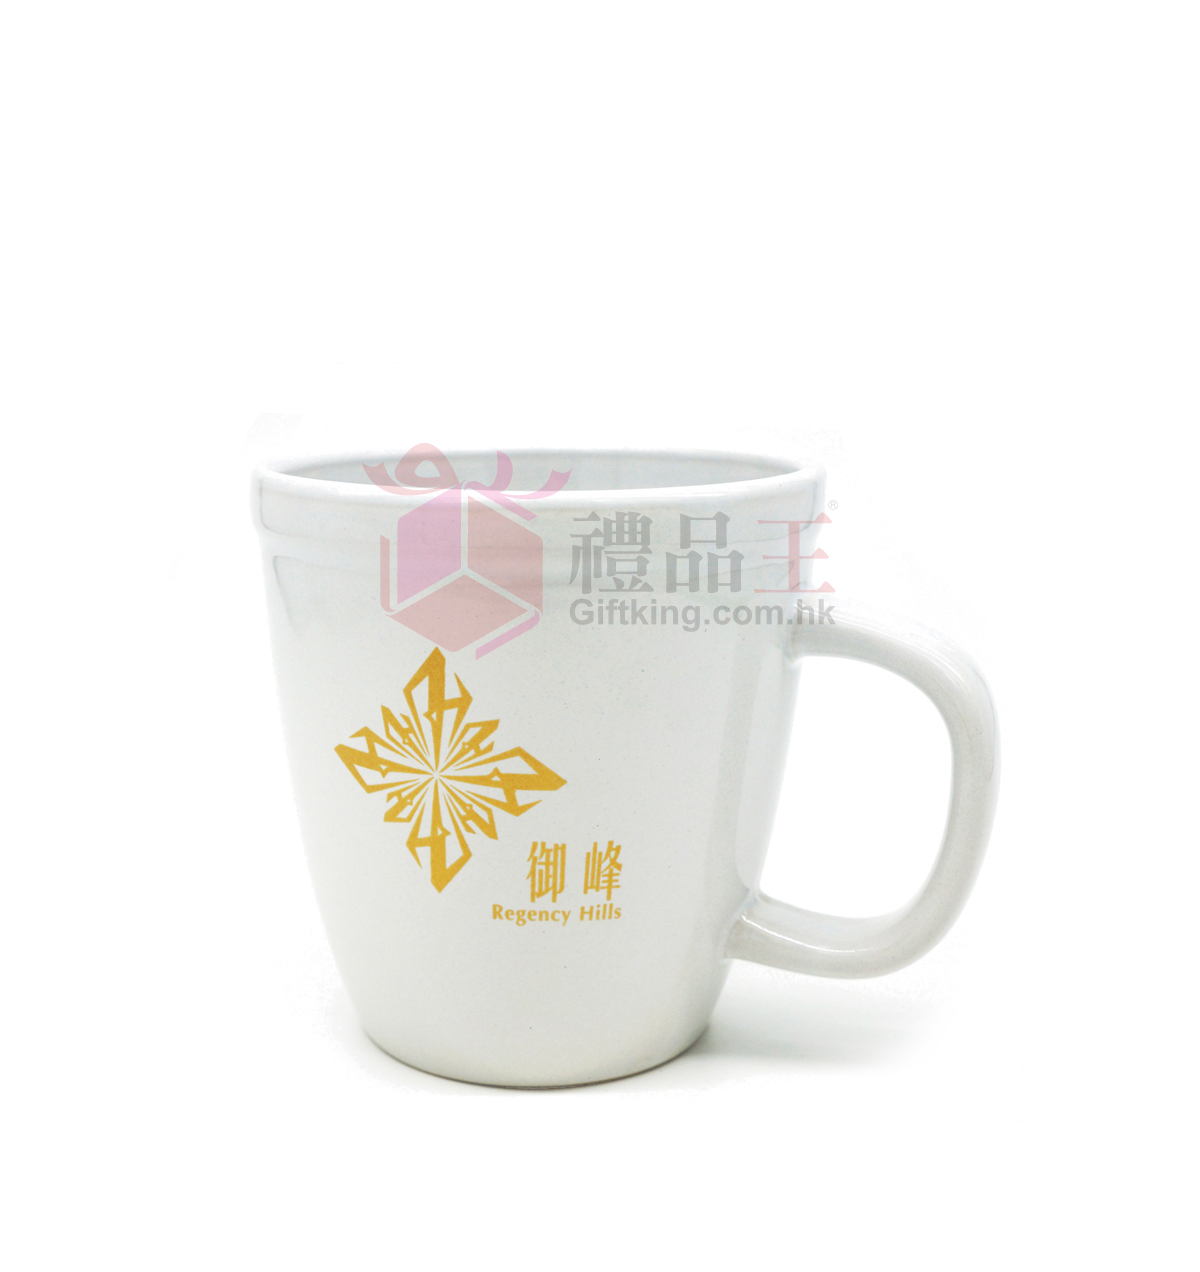 Regency Hills ceramics mug (Advertising gift)